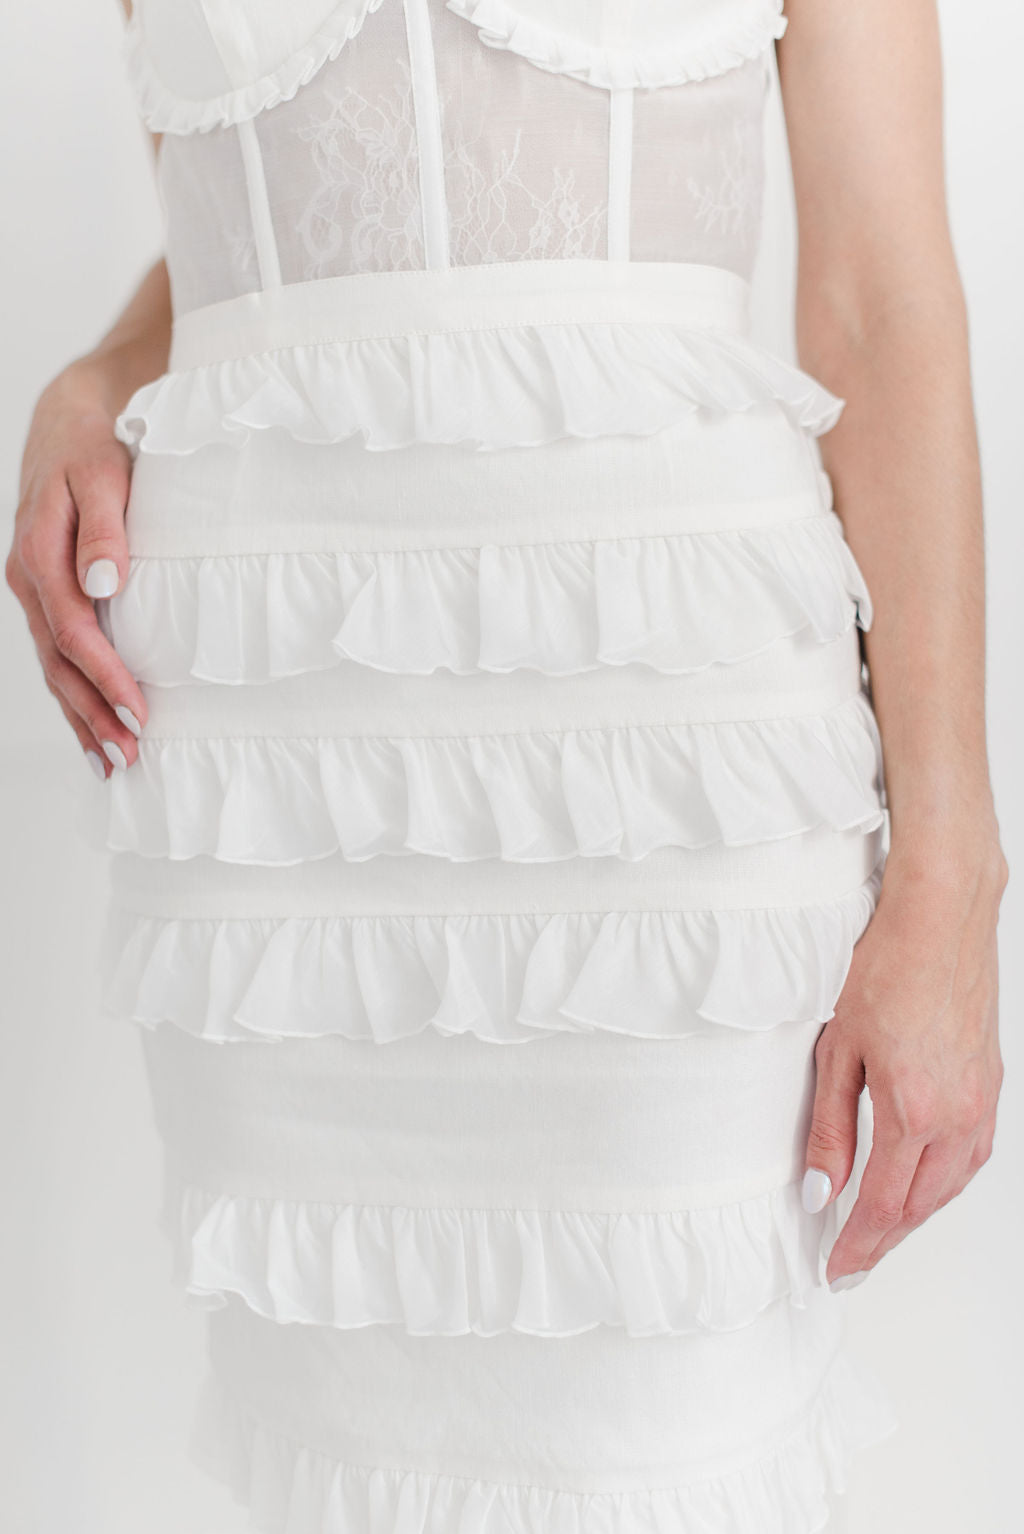 V. Chapman Fiorenza Dress- White